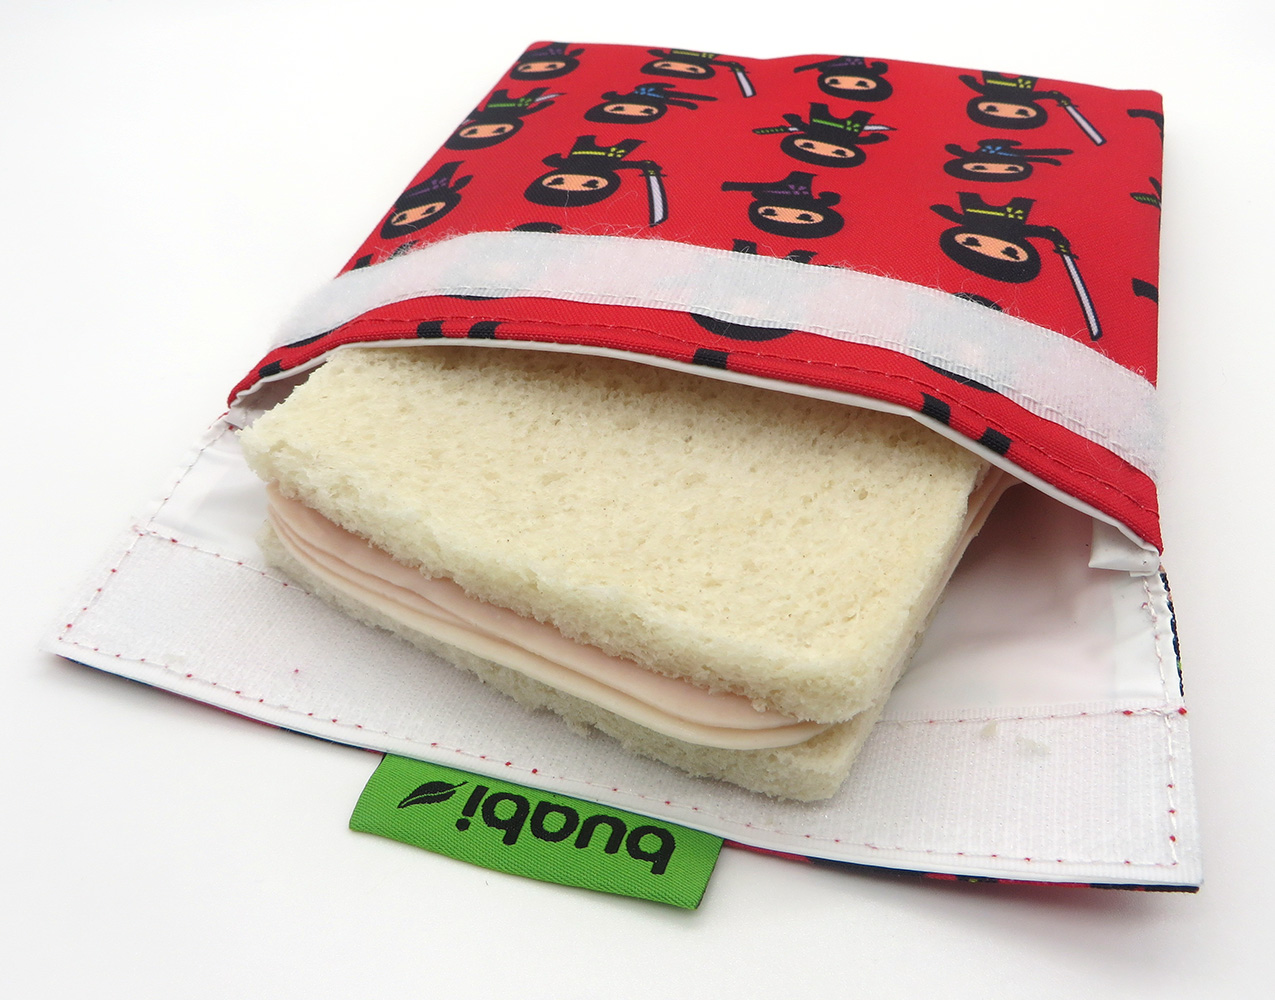 Porta sandwich reutilizable